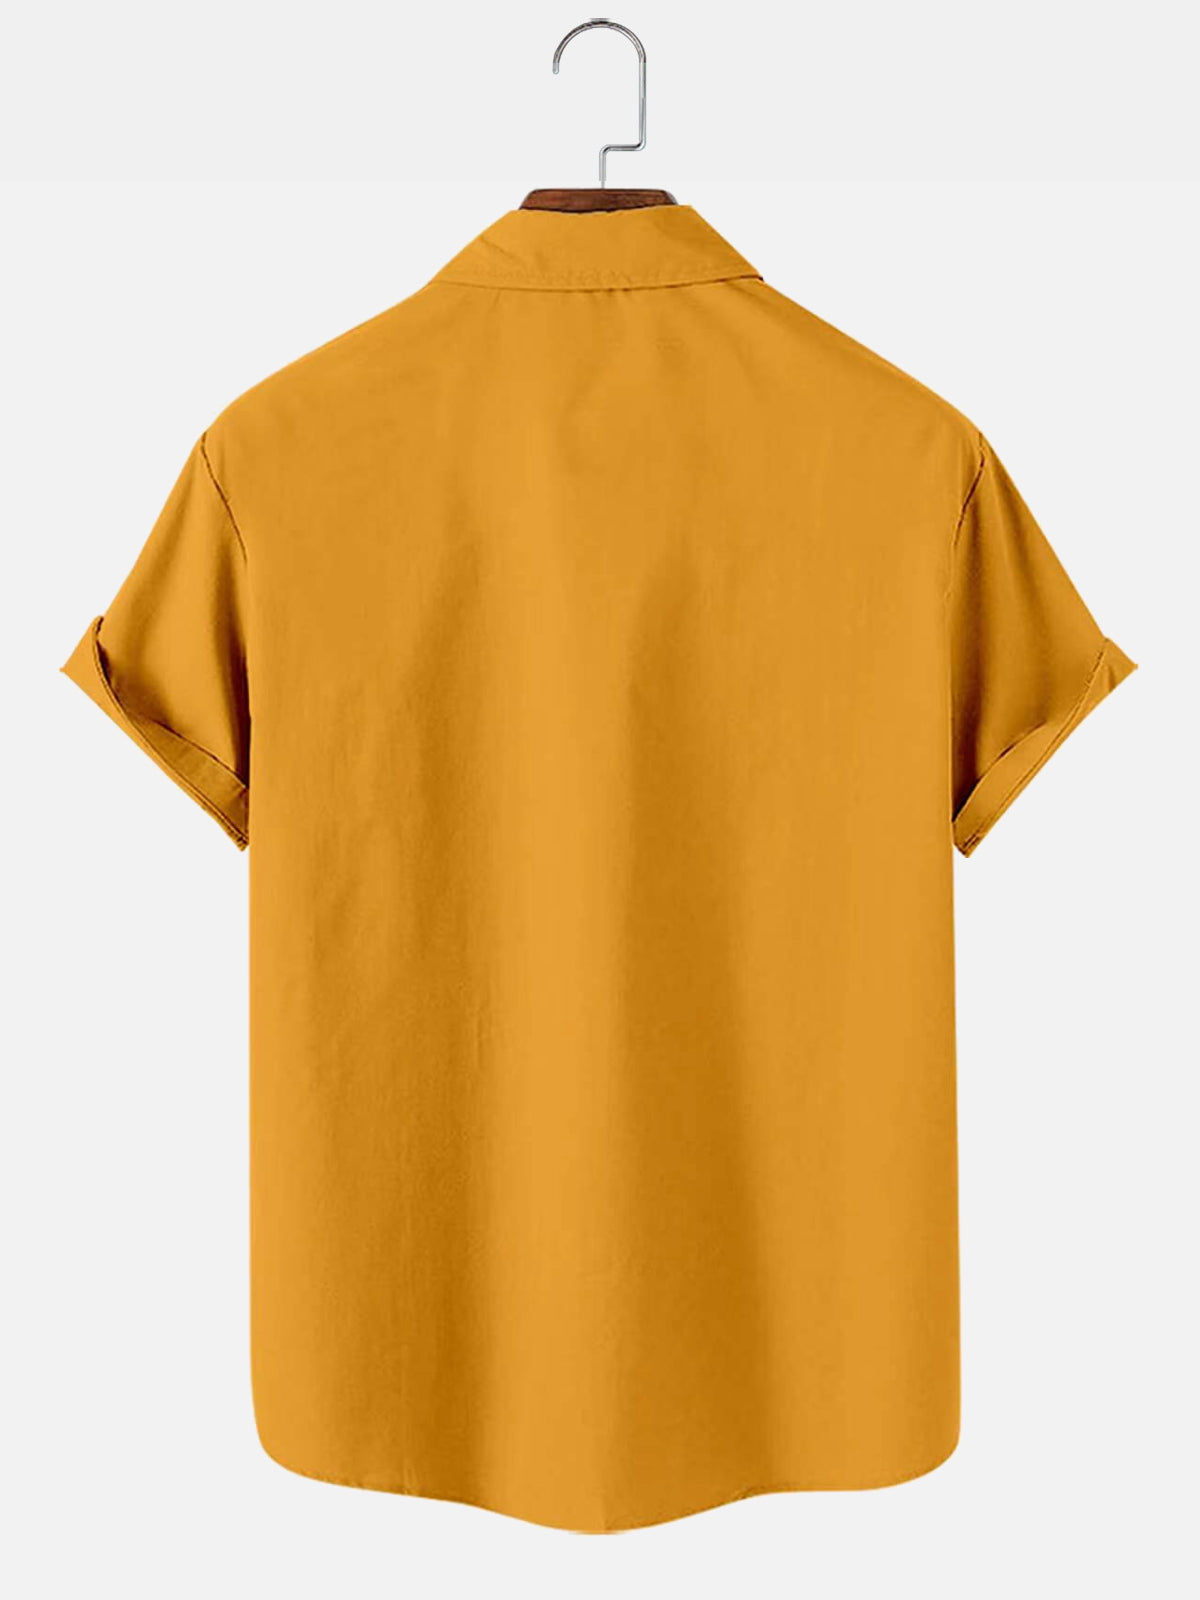 Hutspah Men's Shirt Striped Button Down Vintage Yellow / Gray Cotton XL 80s